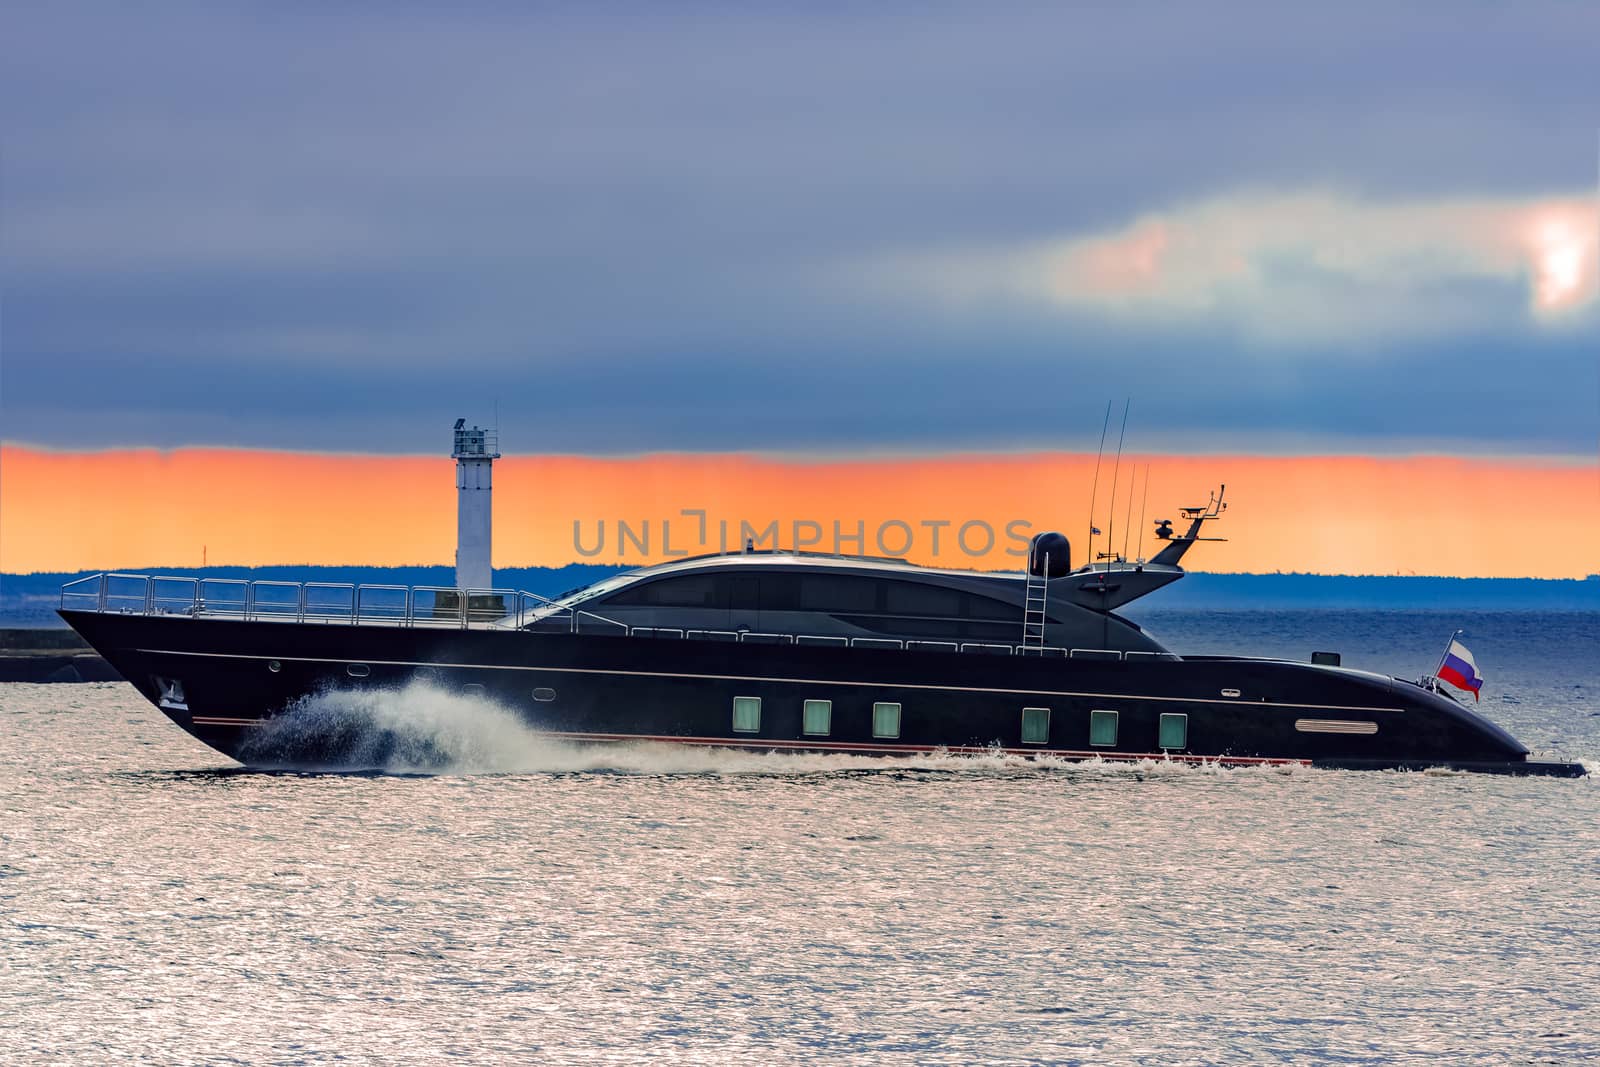 Black elite speed motor boat by sengnsp